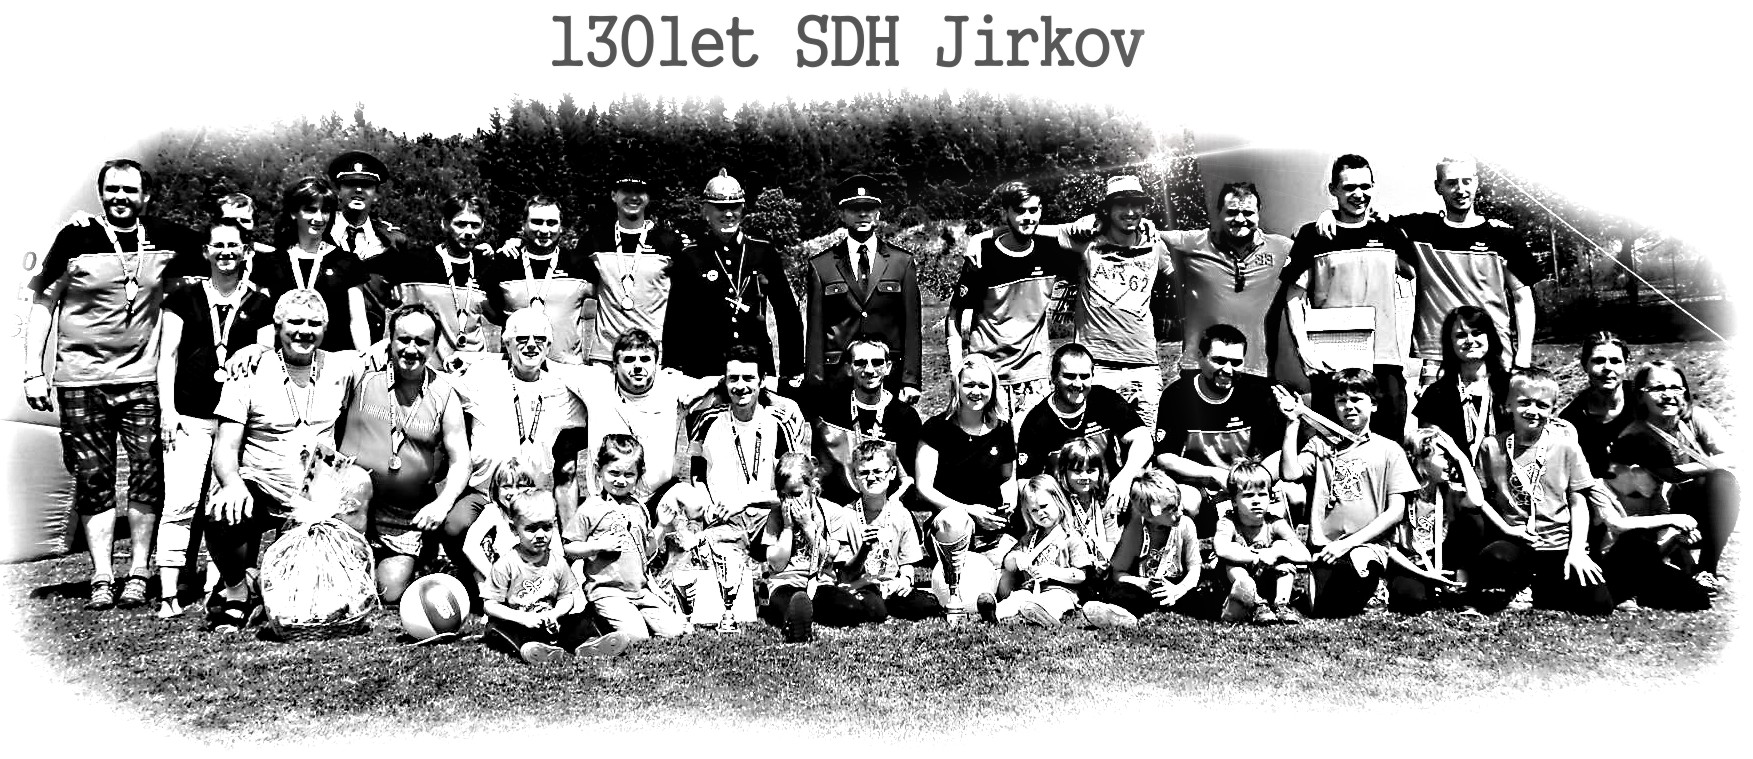 130let SDH Jirkov02